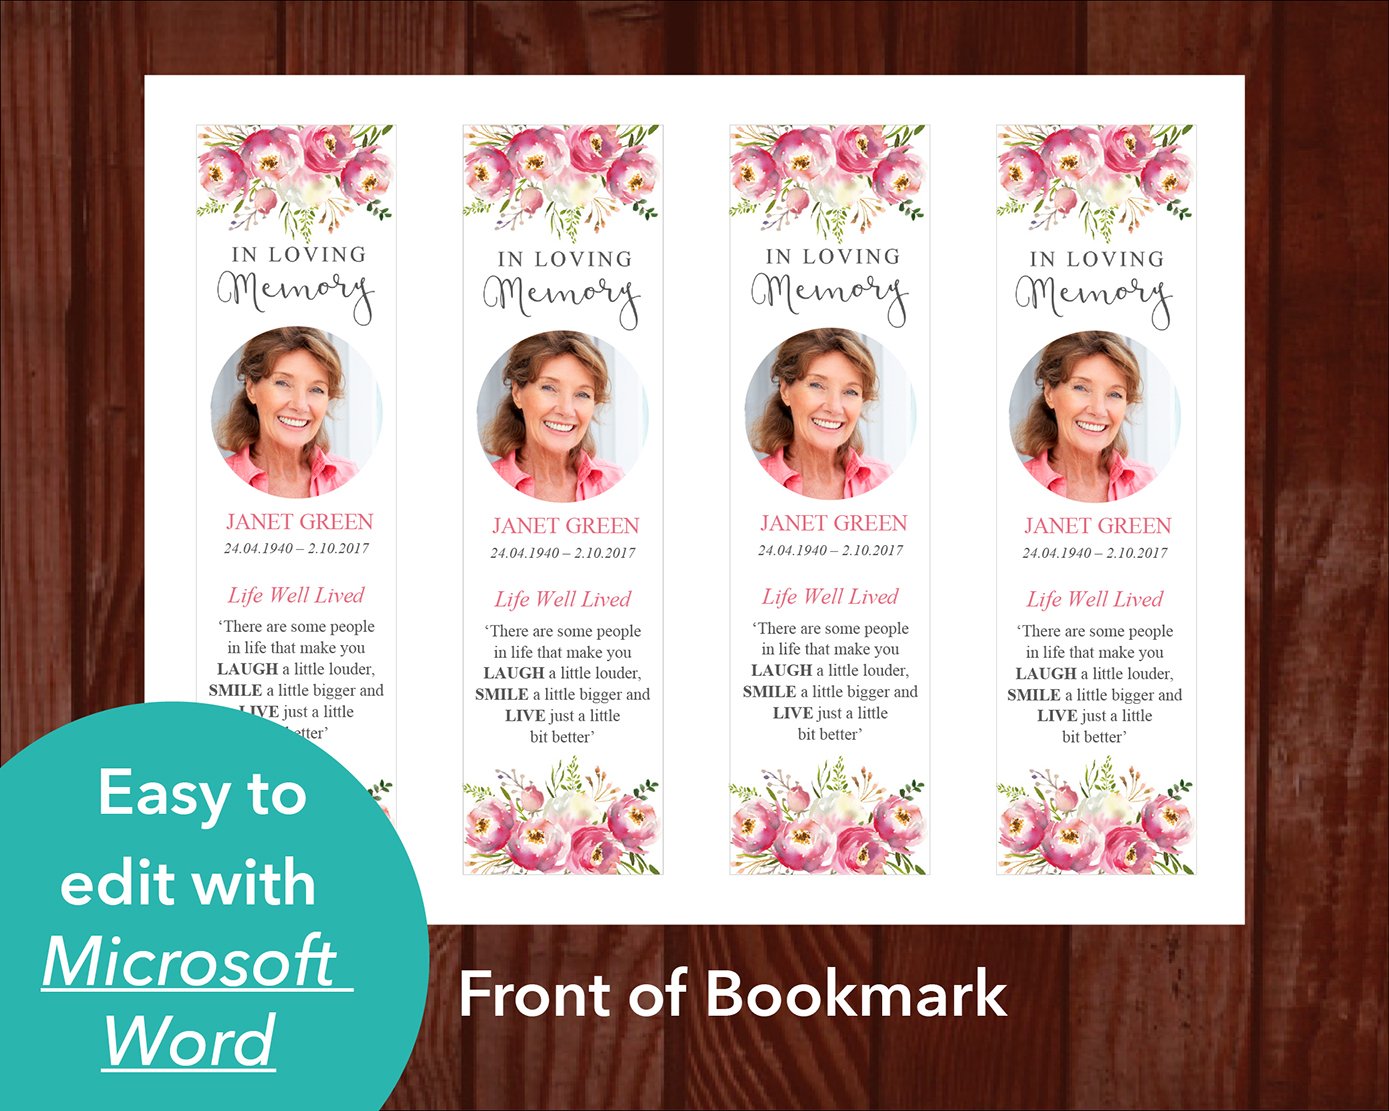 4 Page Floral Burst Funeral Program + Sign, Slide Show & Bookmark